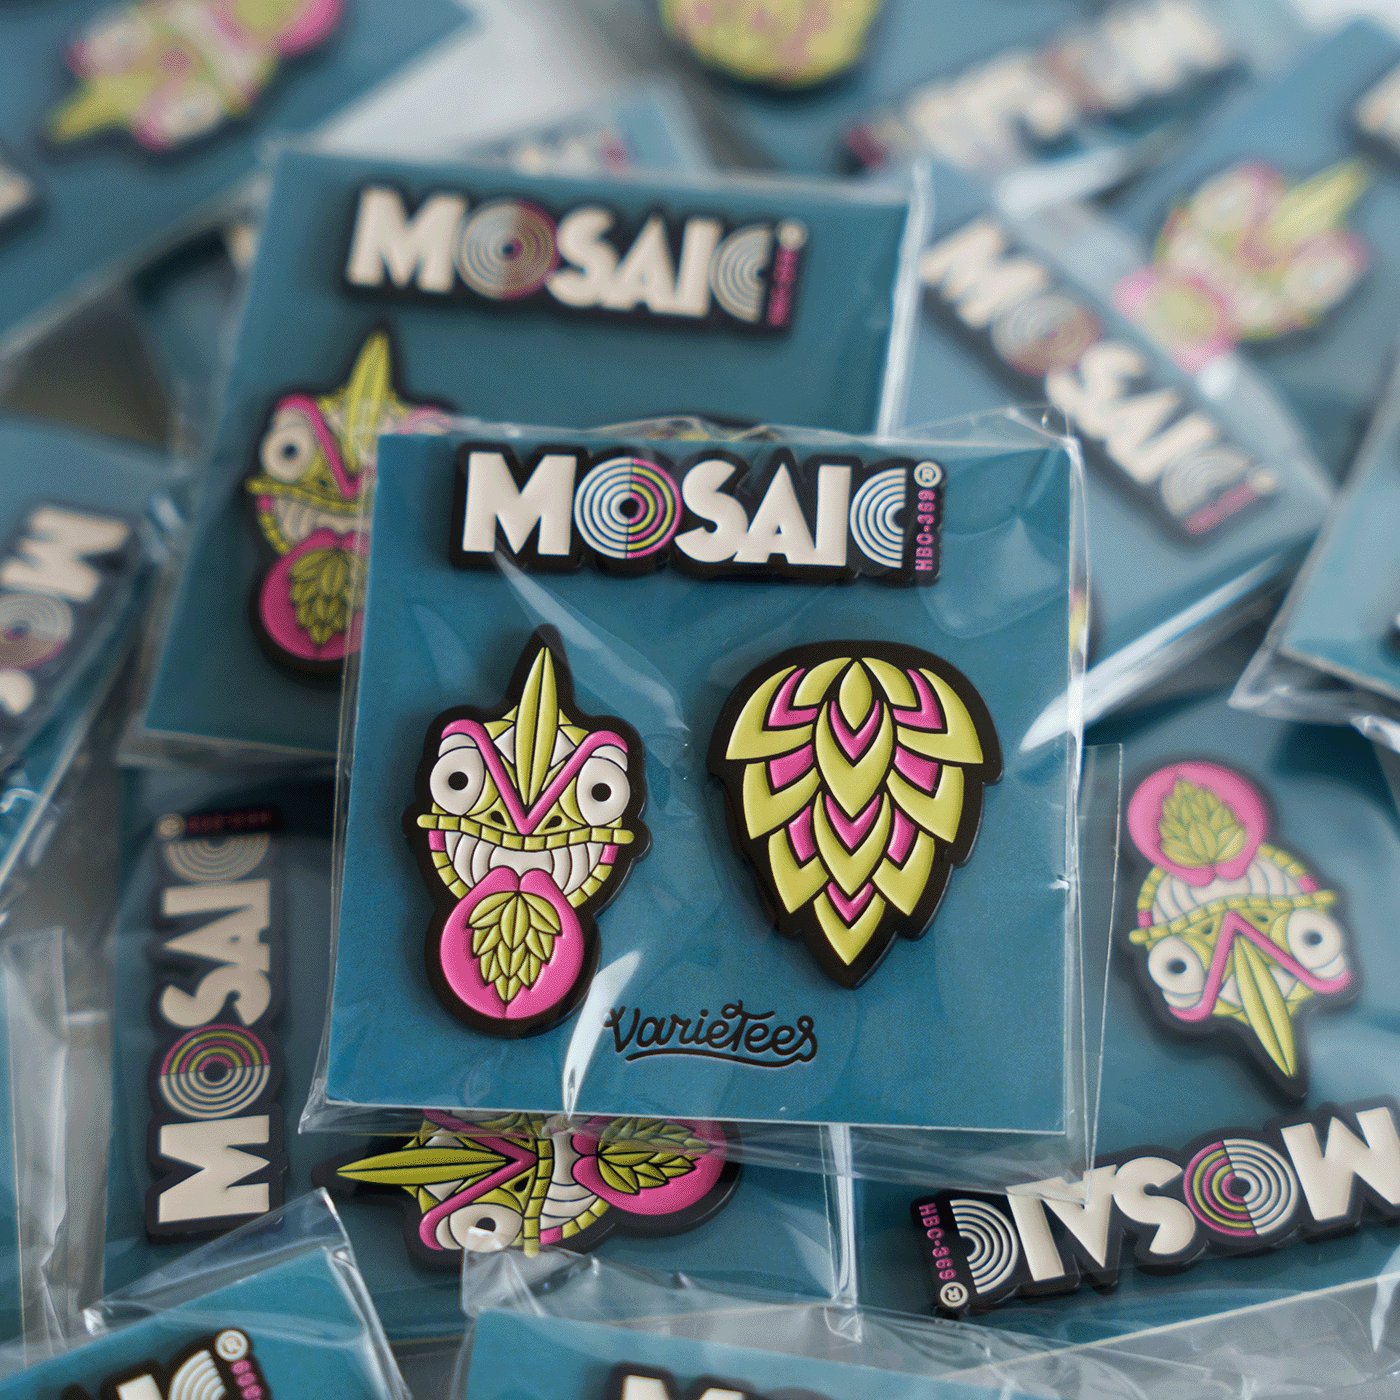 Mosaic® Pin Set